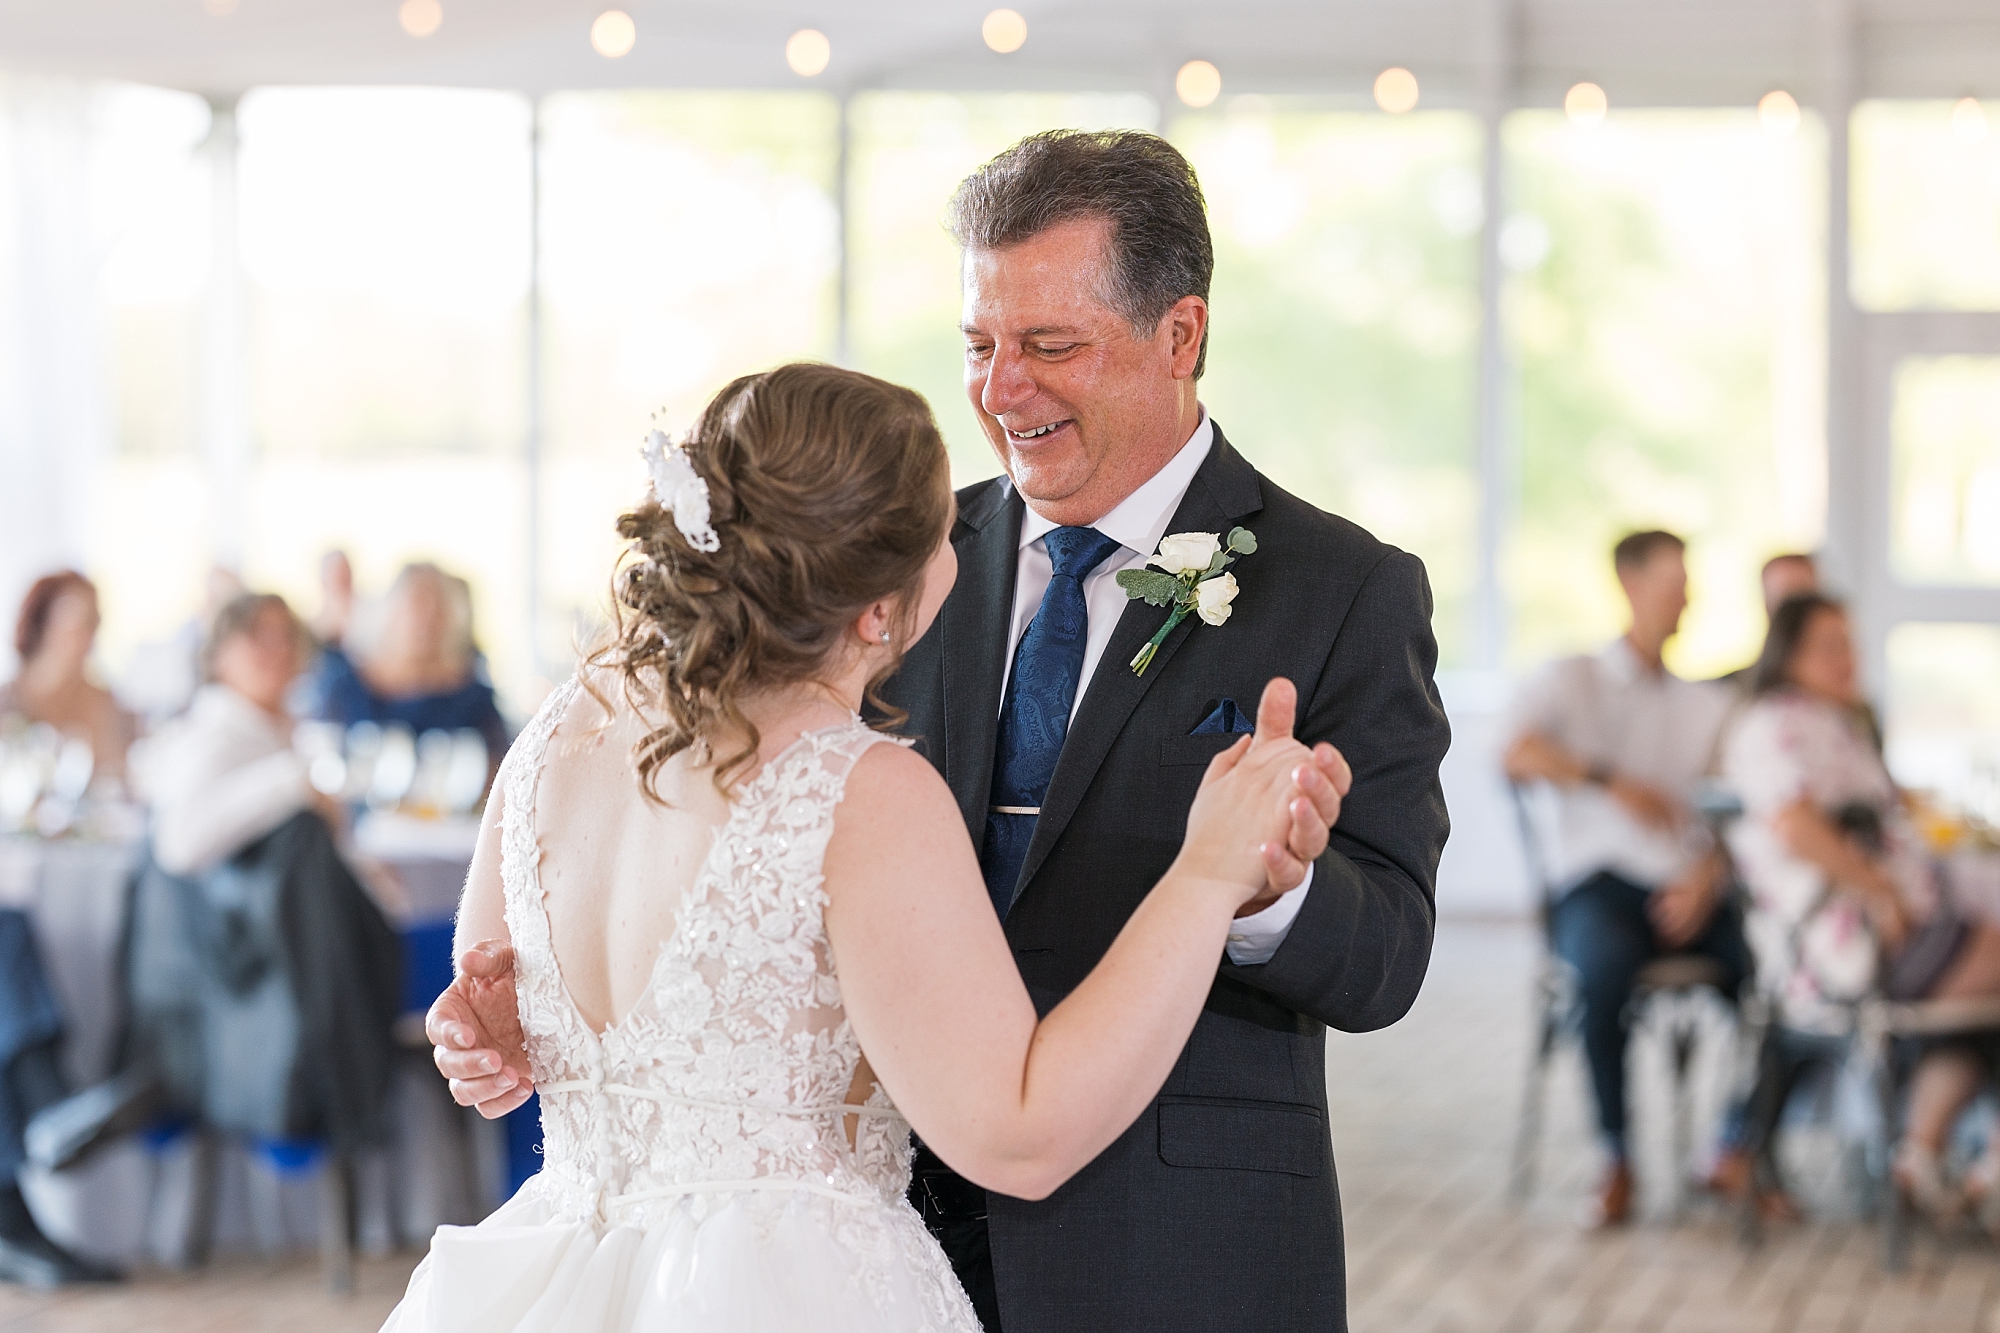 12 oaks father daughter dance - Raleigh NC Wedding Photographer - Sarah Hinckley Photography